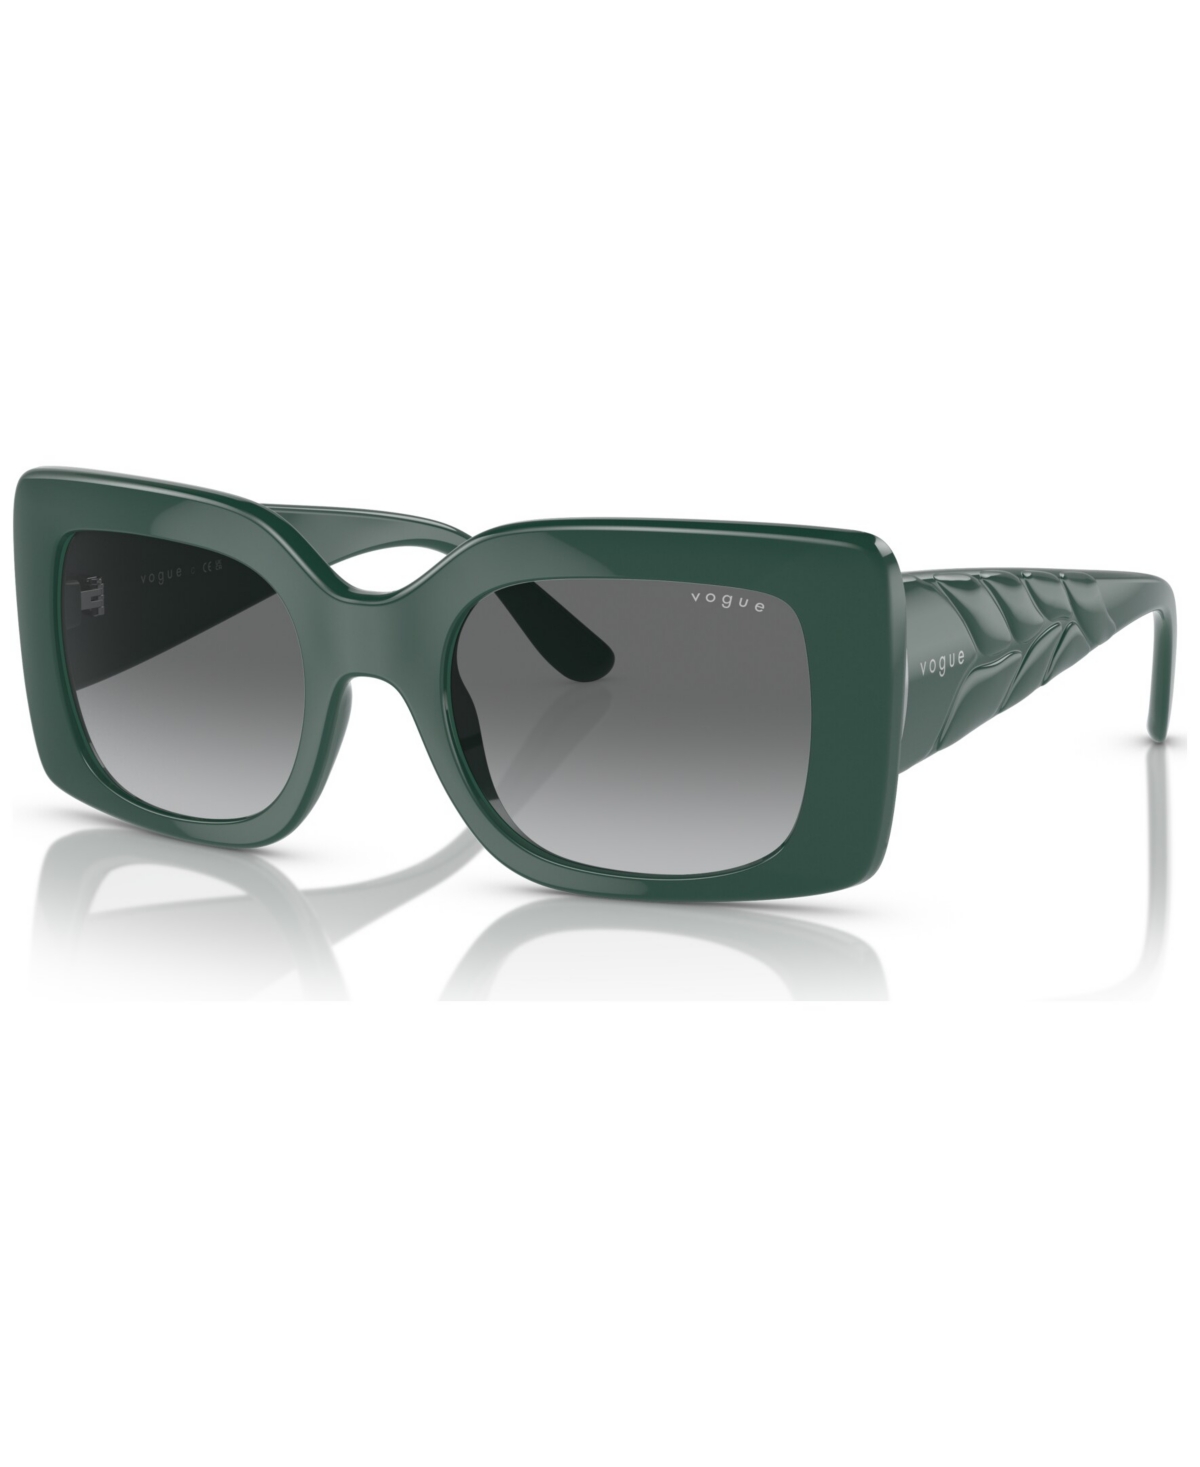 Vogue Eyewear Women's Sunglasses, Vo5481s In Full Dark Green